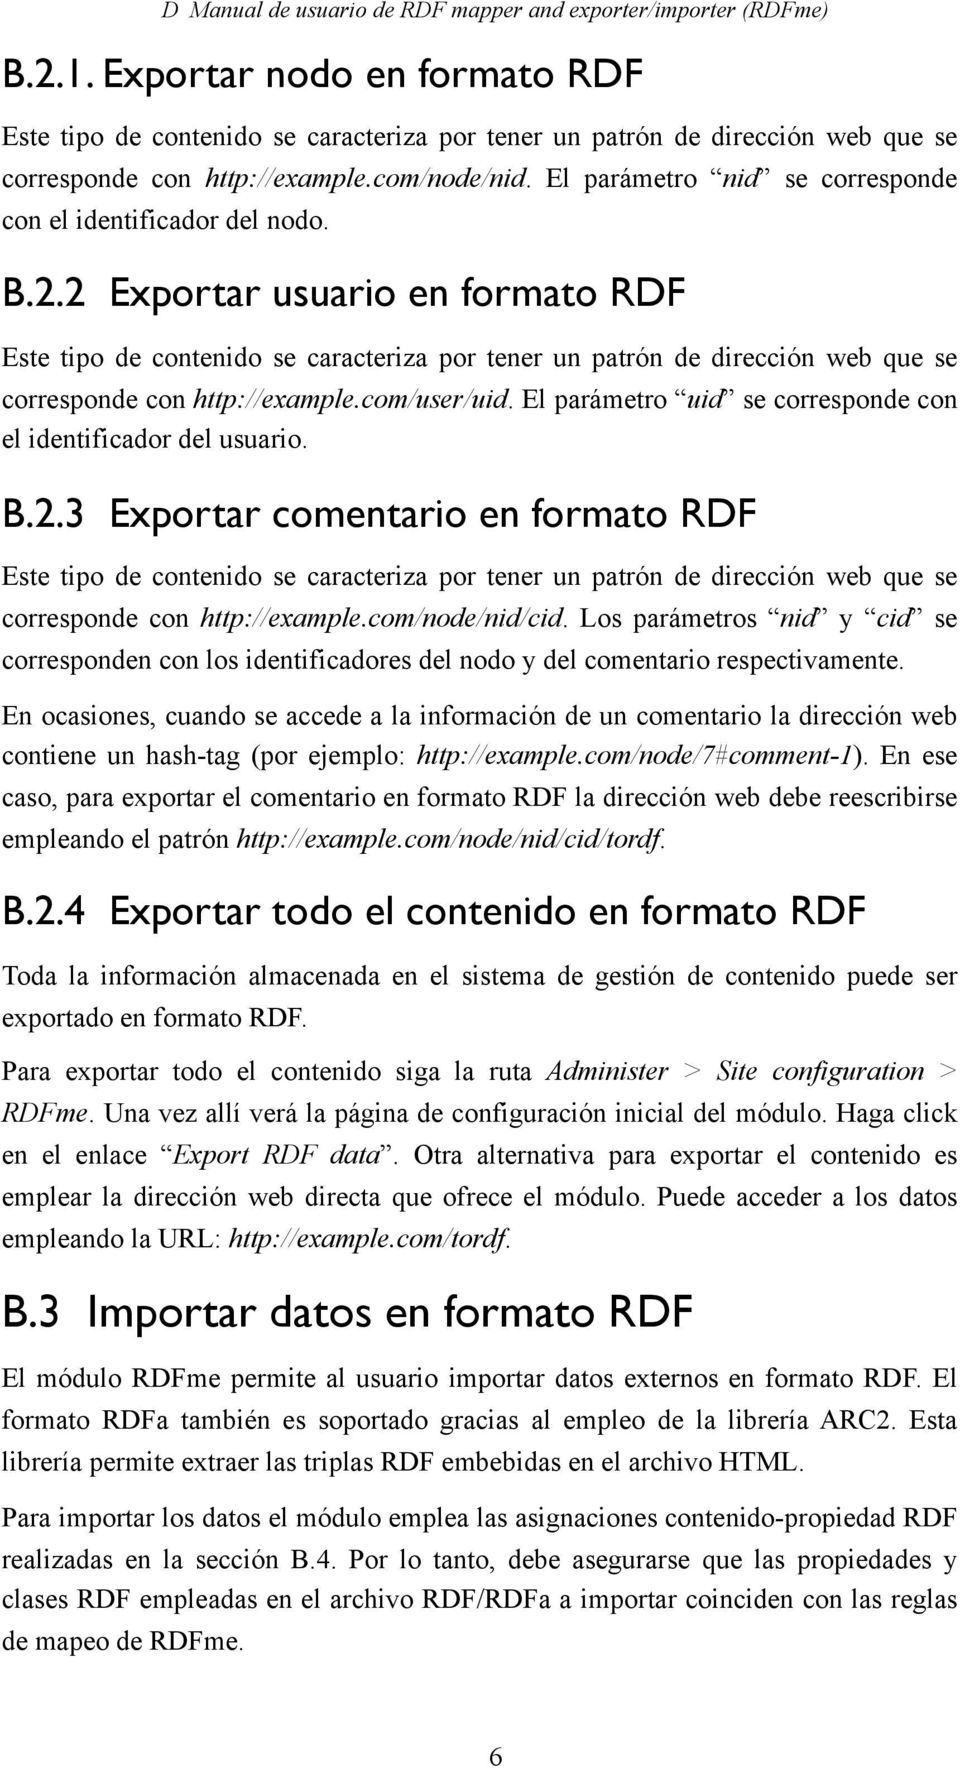 2 Exportar usuario en formato RDF Este tipo de contenido se caracteriza por tener un patrón de dirección web que se corresponde con http://example.com/user/uid.